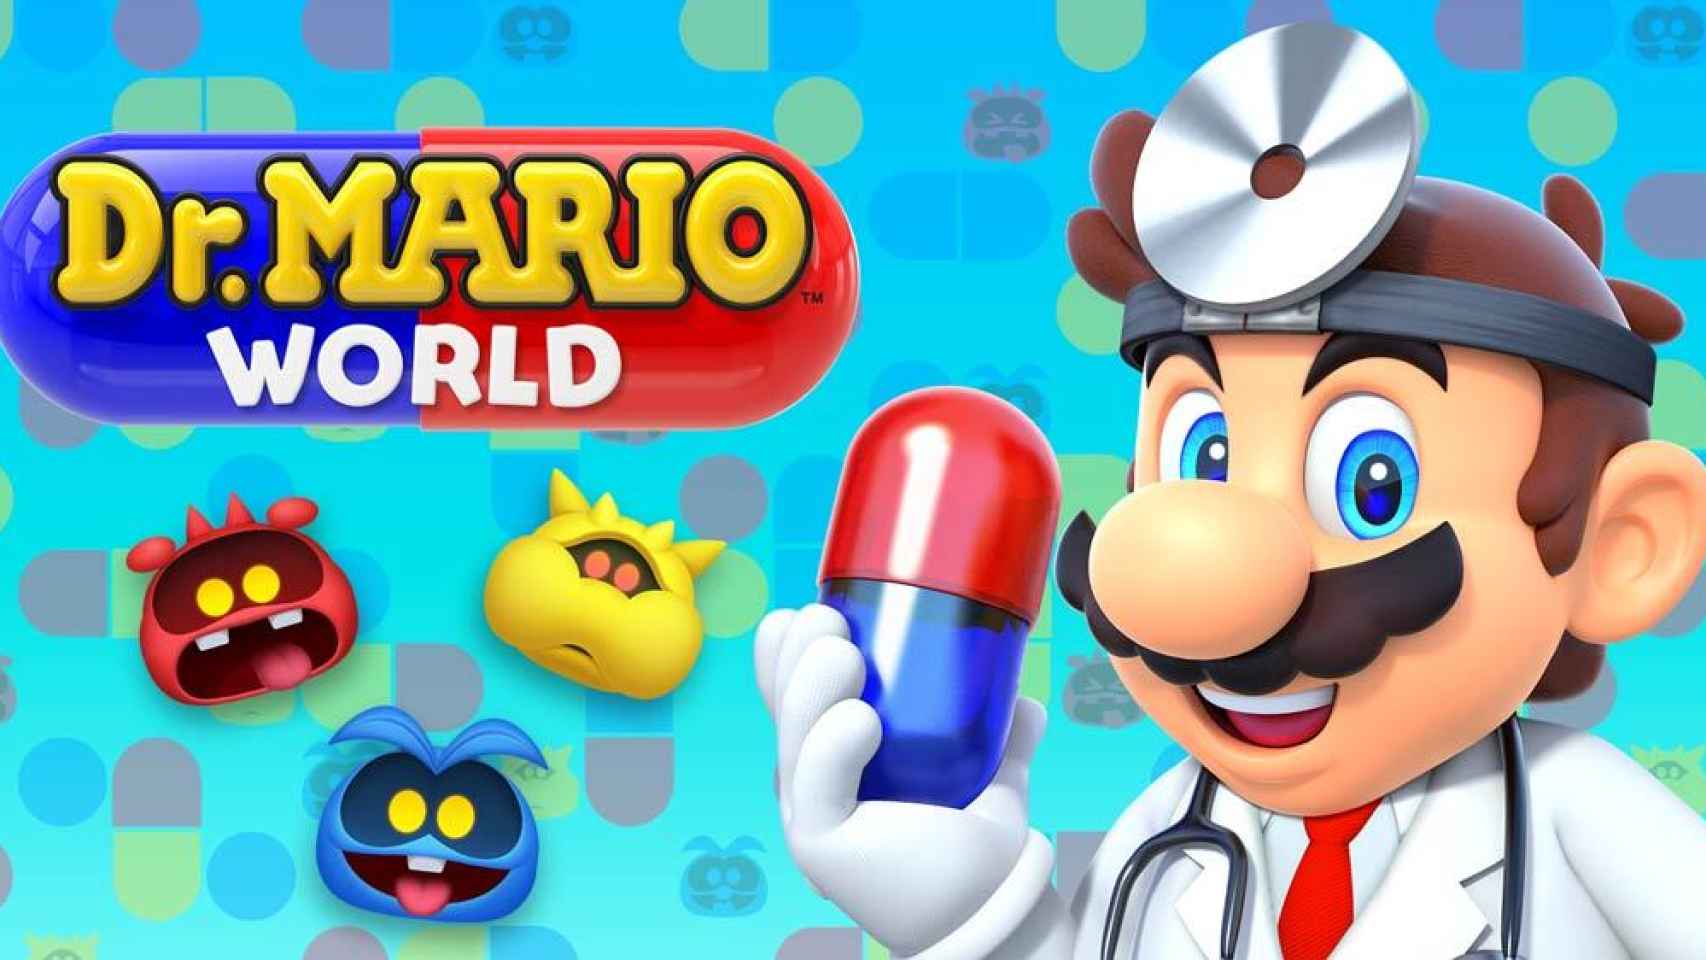 Dr Mario World de Nintendo llega a Android en pocas semanas. ¡Regístrate ya!